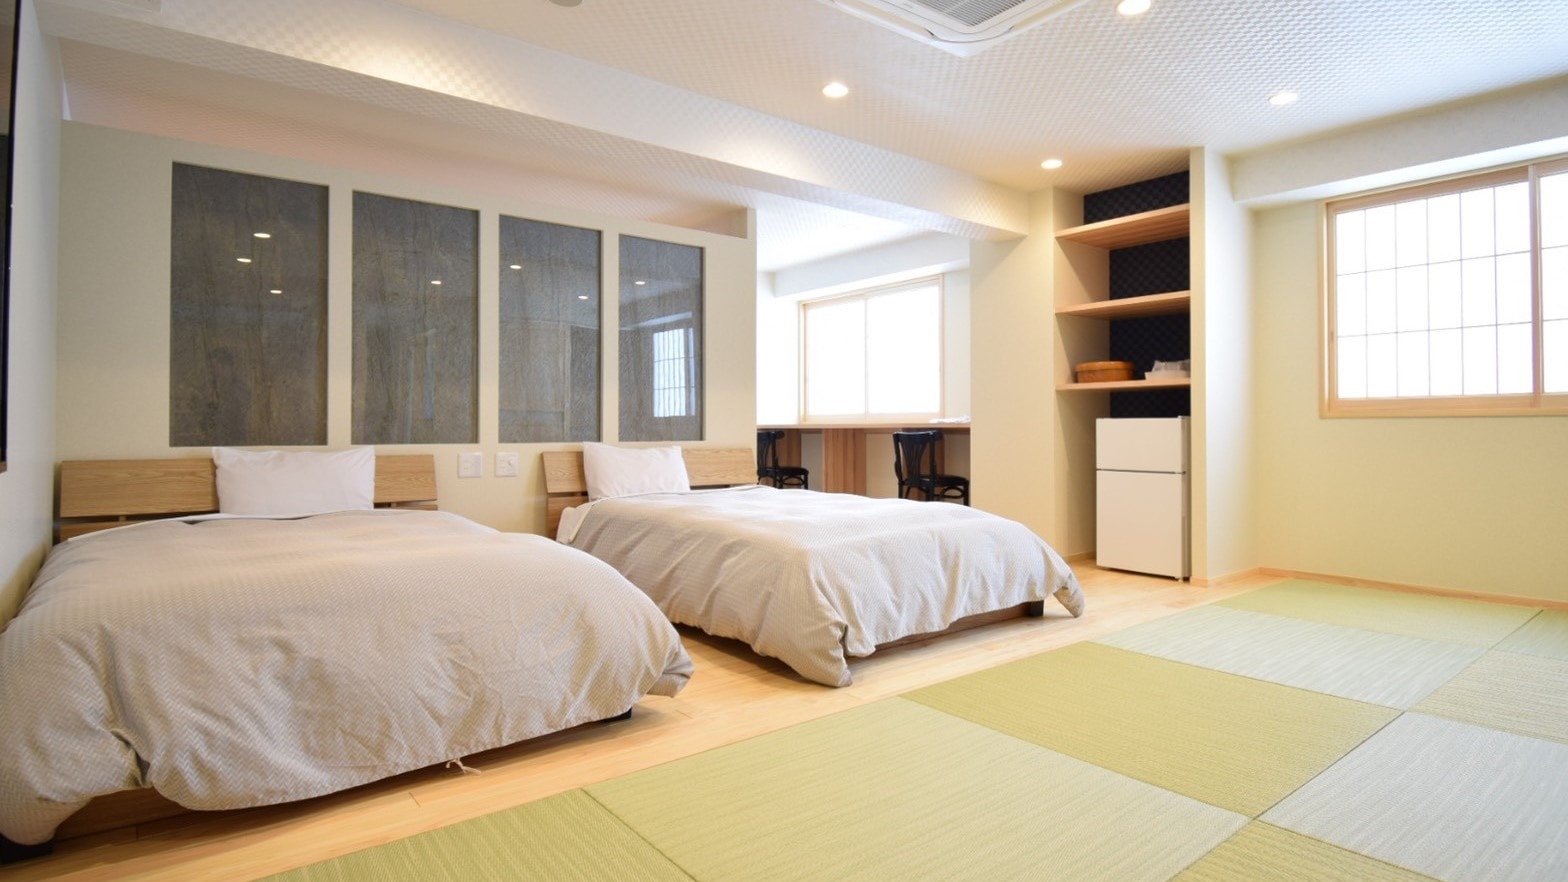 [Premium Modern] ห้องสไตล์ญี่ปุ่น-ตะวันตก พร้อมห้องน้ำส่วนตัว + ห้องอาหาร 70 ตร.ม